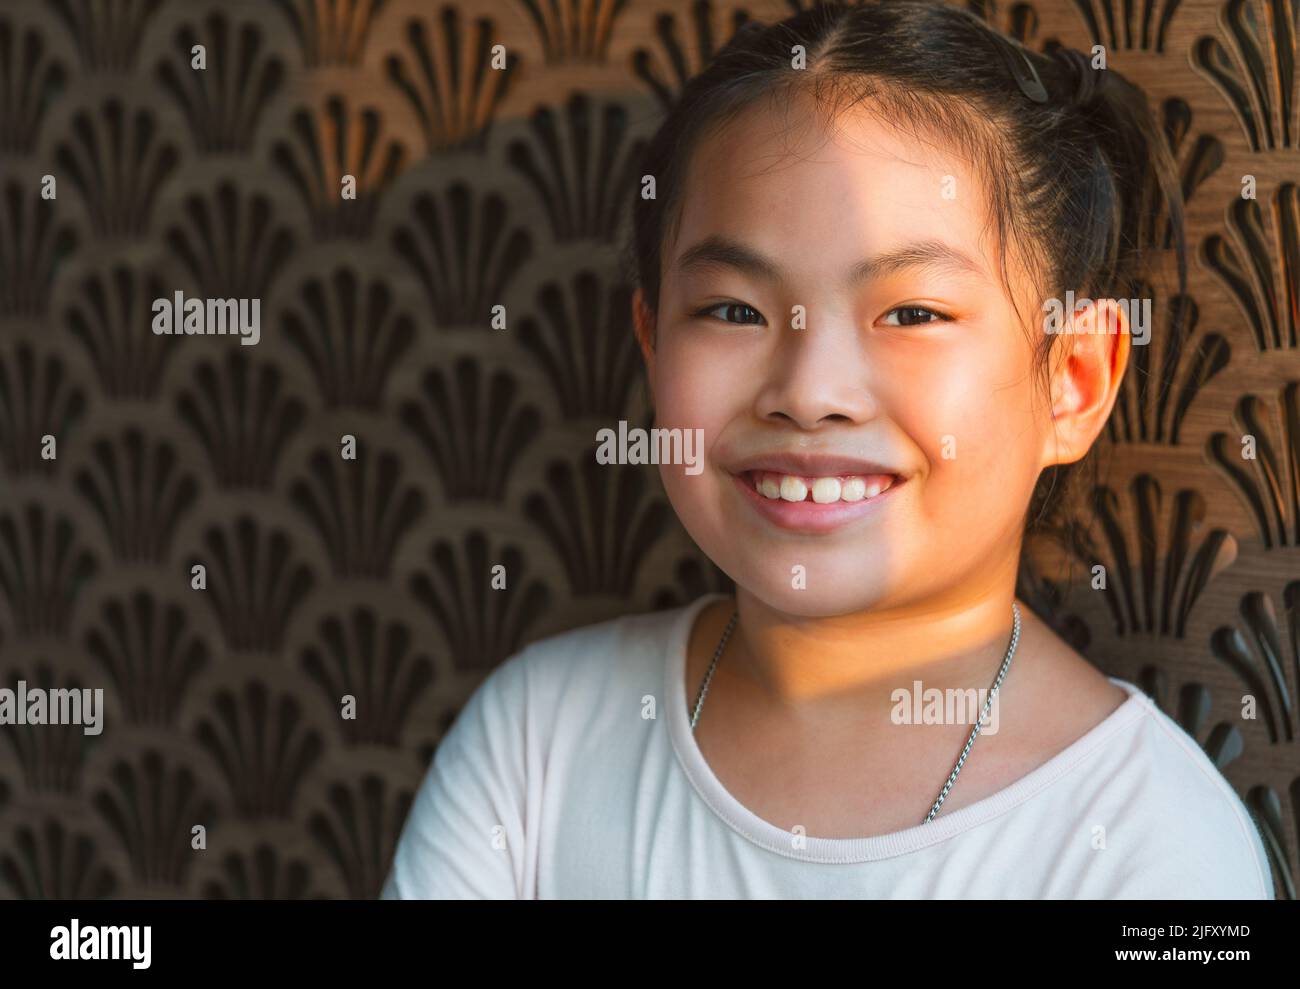 Ritratto di ragazza bambino asiatica carina con bella parete di legno marrone, viso sorridente, luce naturale del sole, primo piano immagine di ragazza bambino sano, spazio vuoto Foto Stock